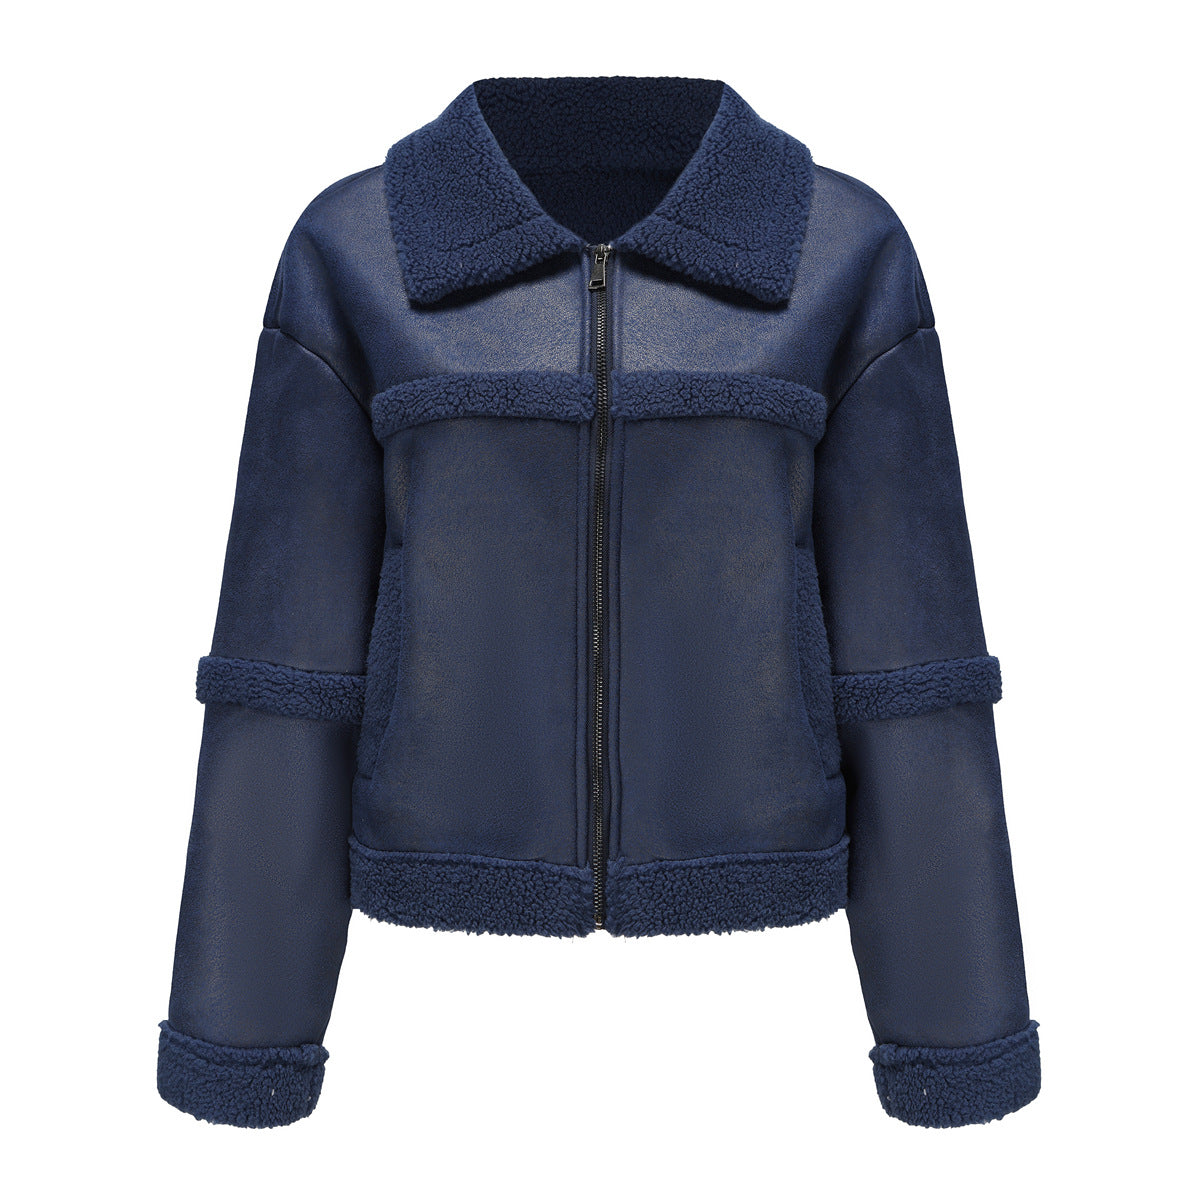 Warm Fleece Leather Windproof Jacket